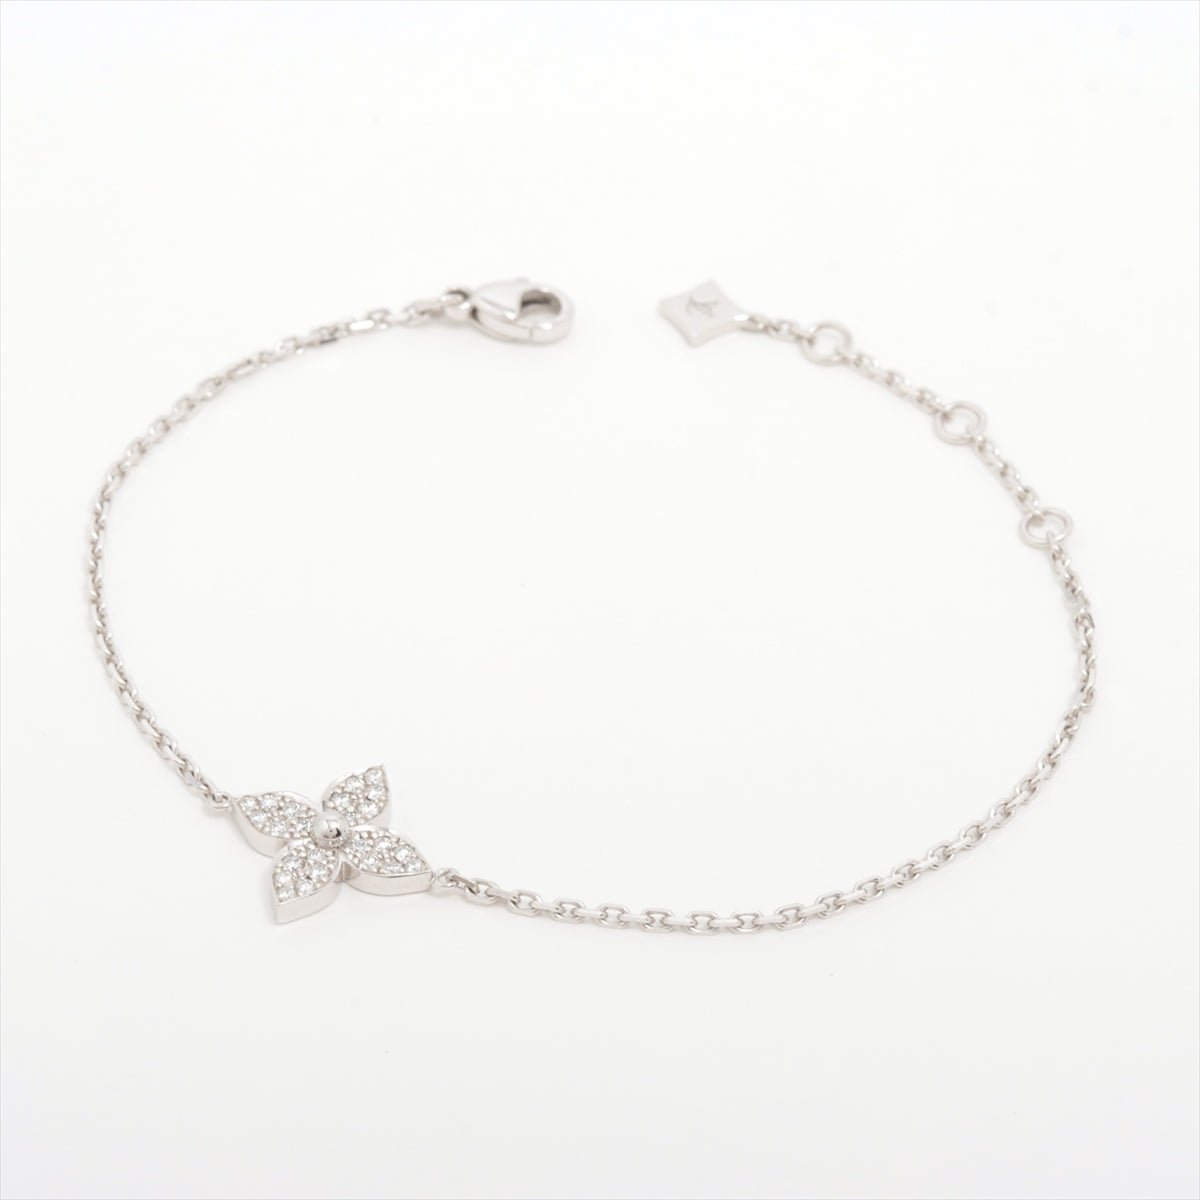 Louis Vuitton Brasserie Star Blossom diamond Bracelet 750(WG) 4.1g